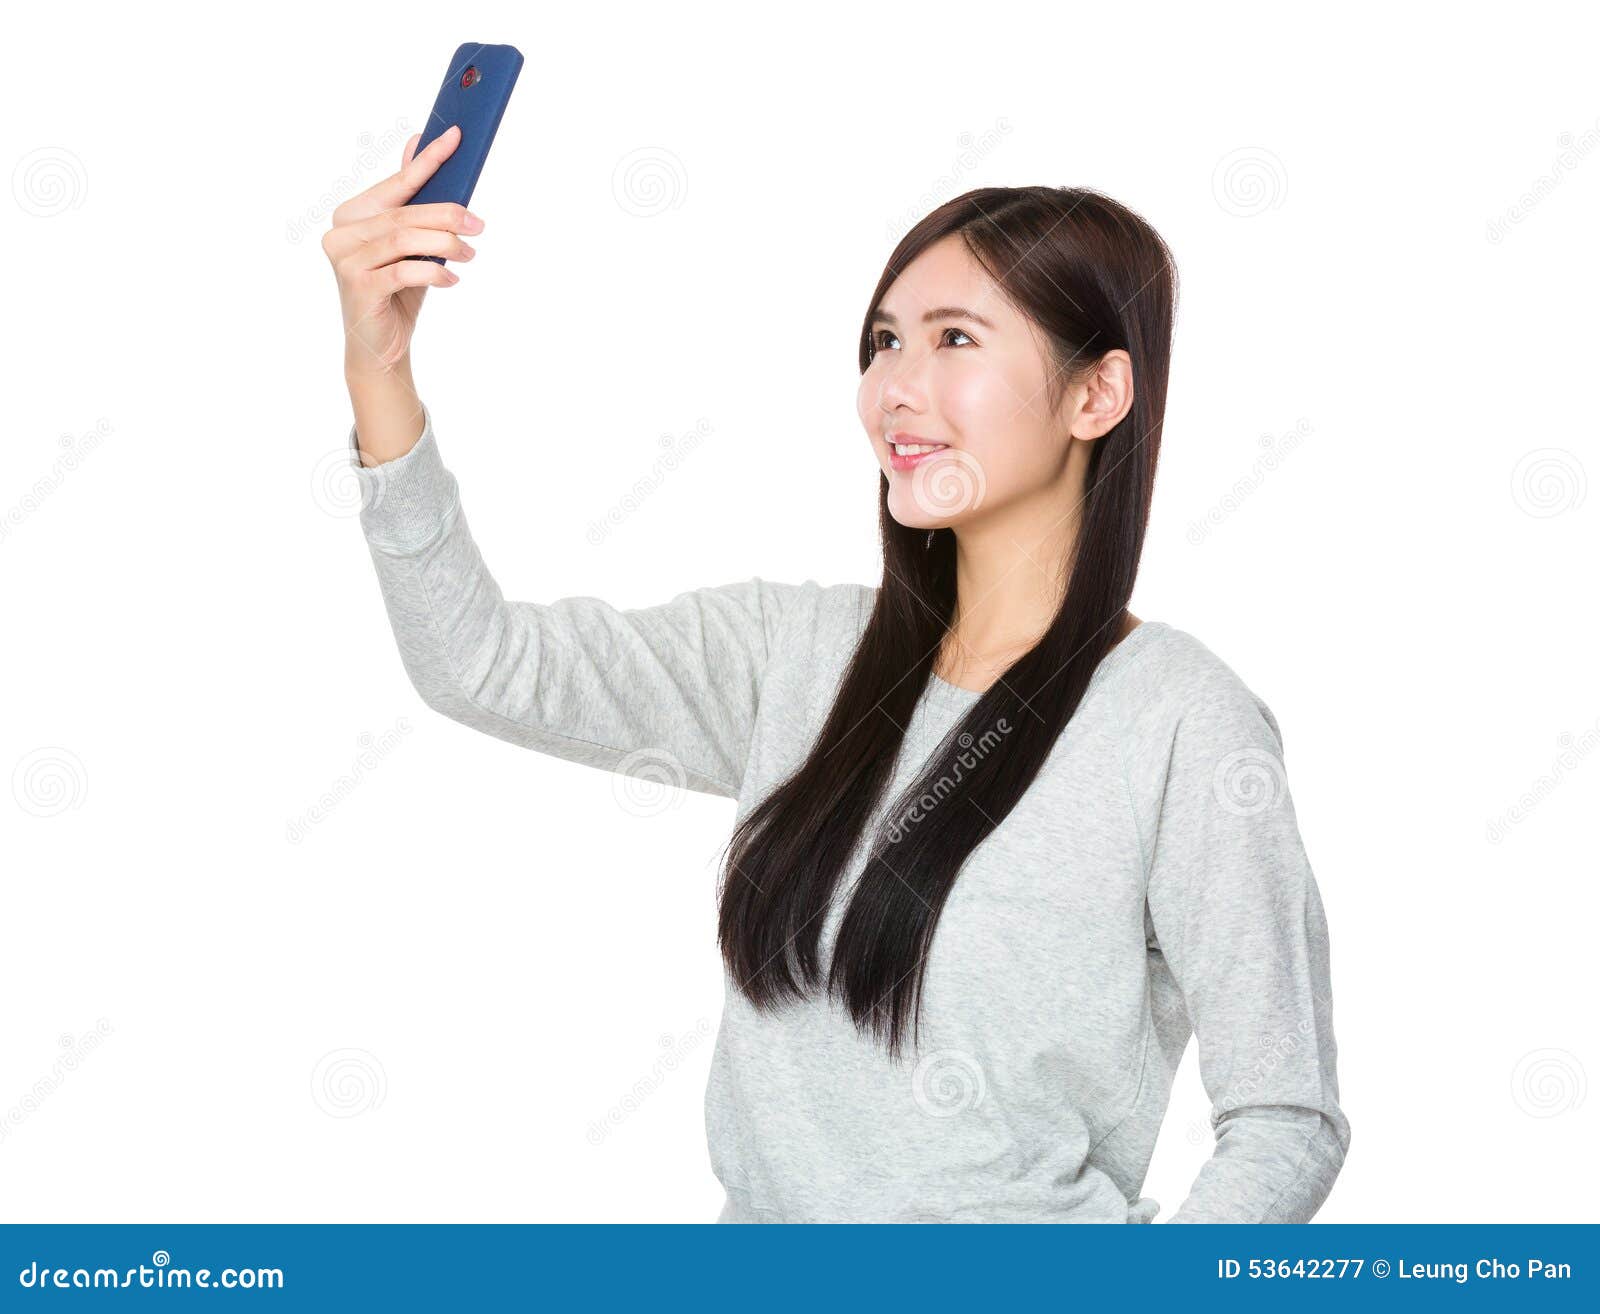 Young woman take selfie